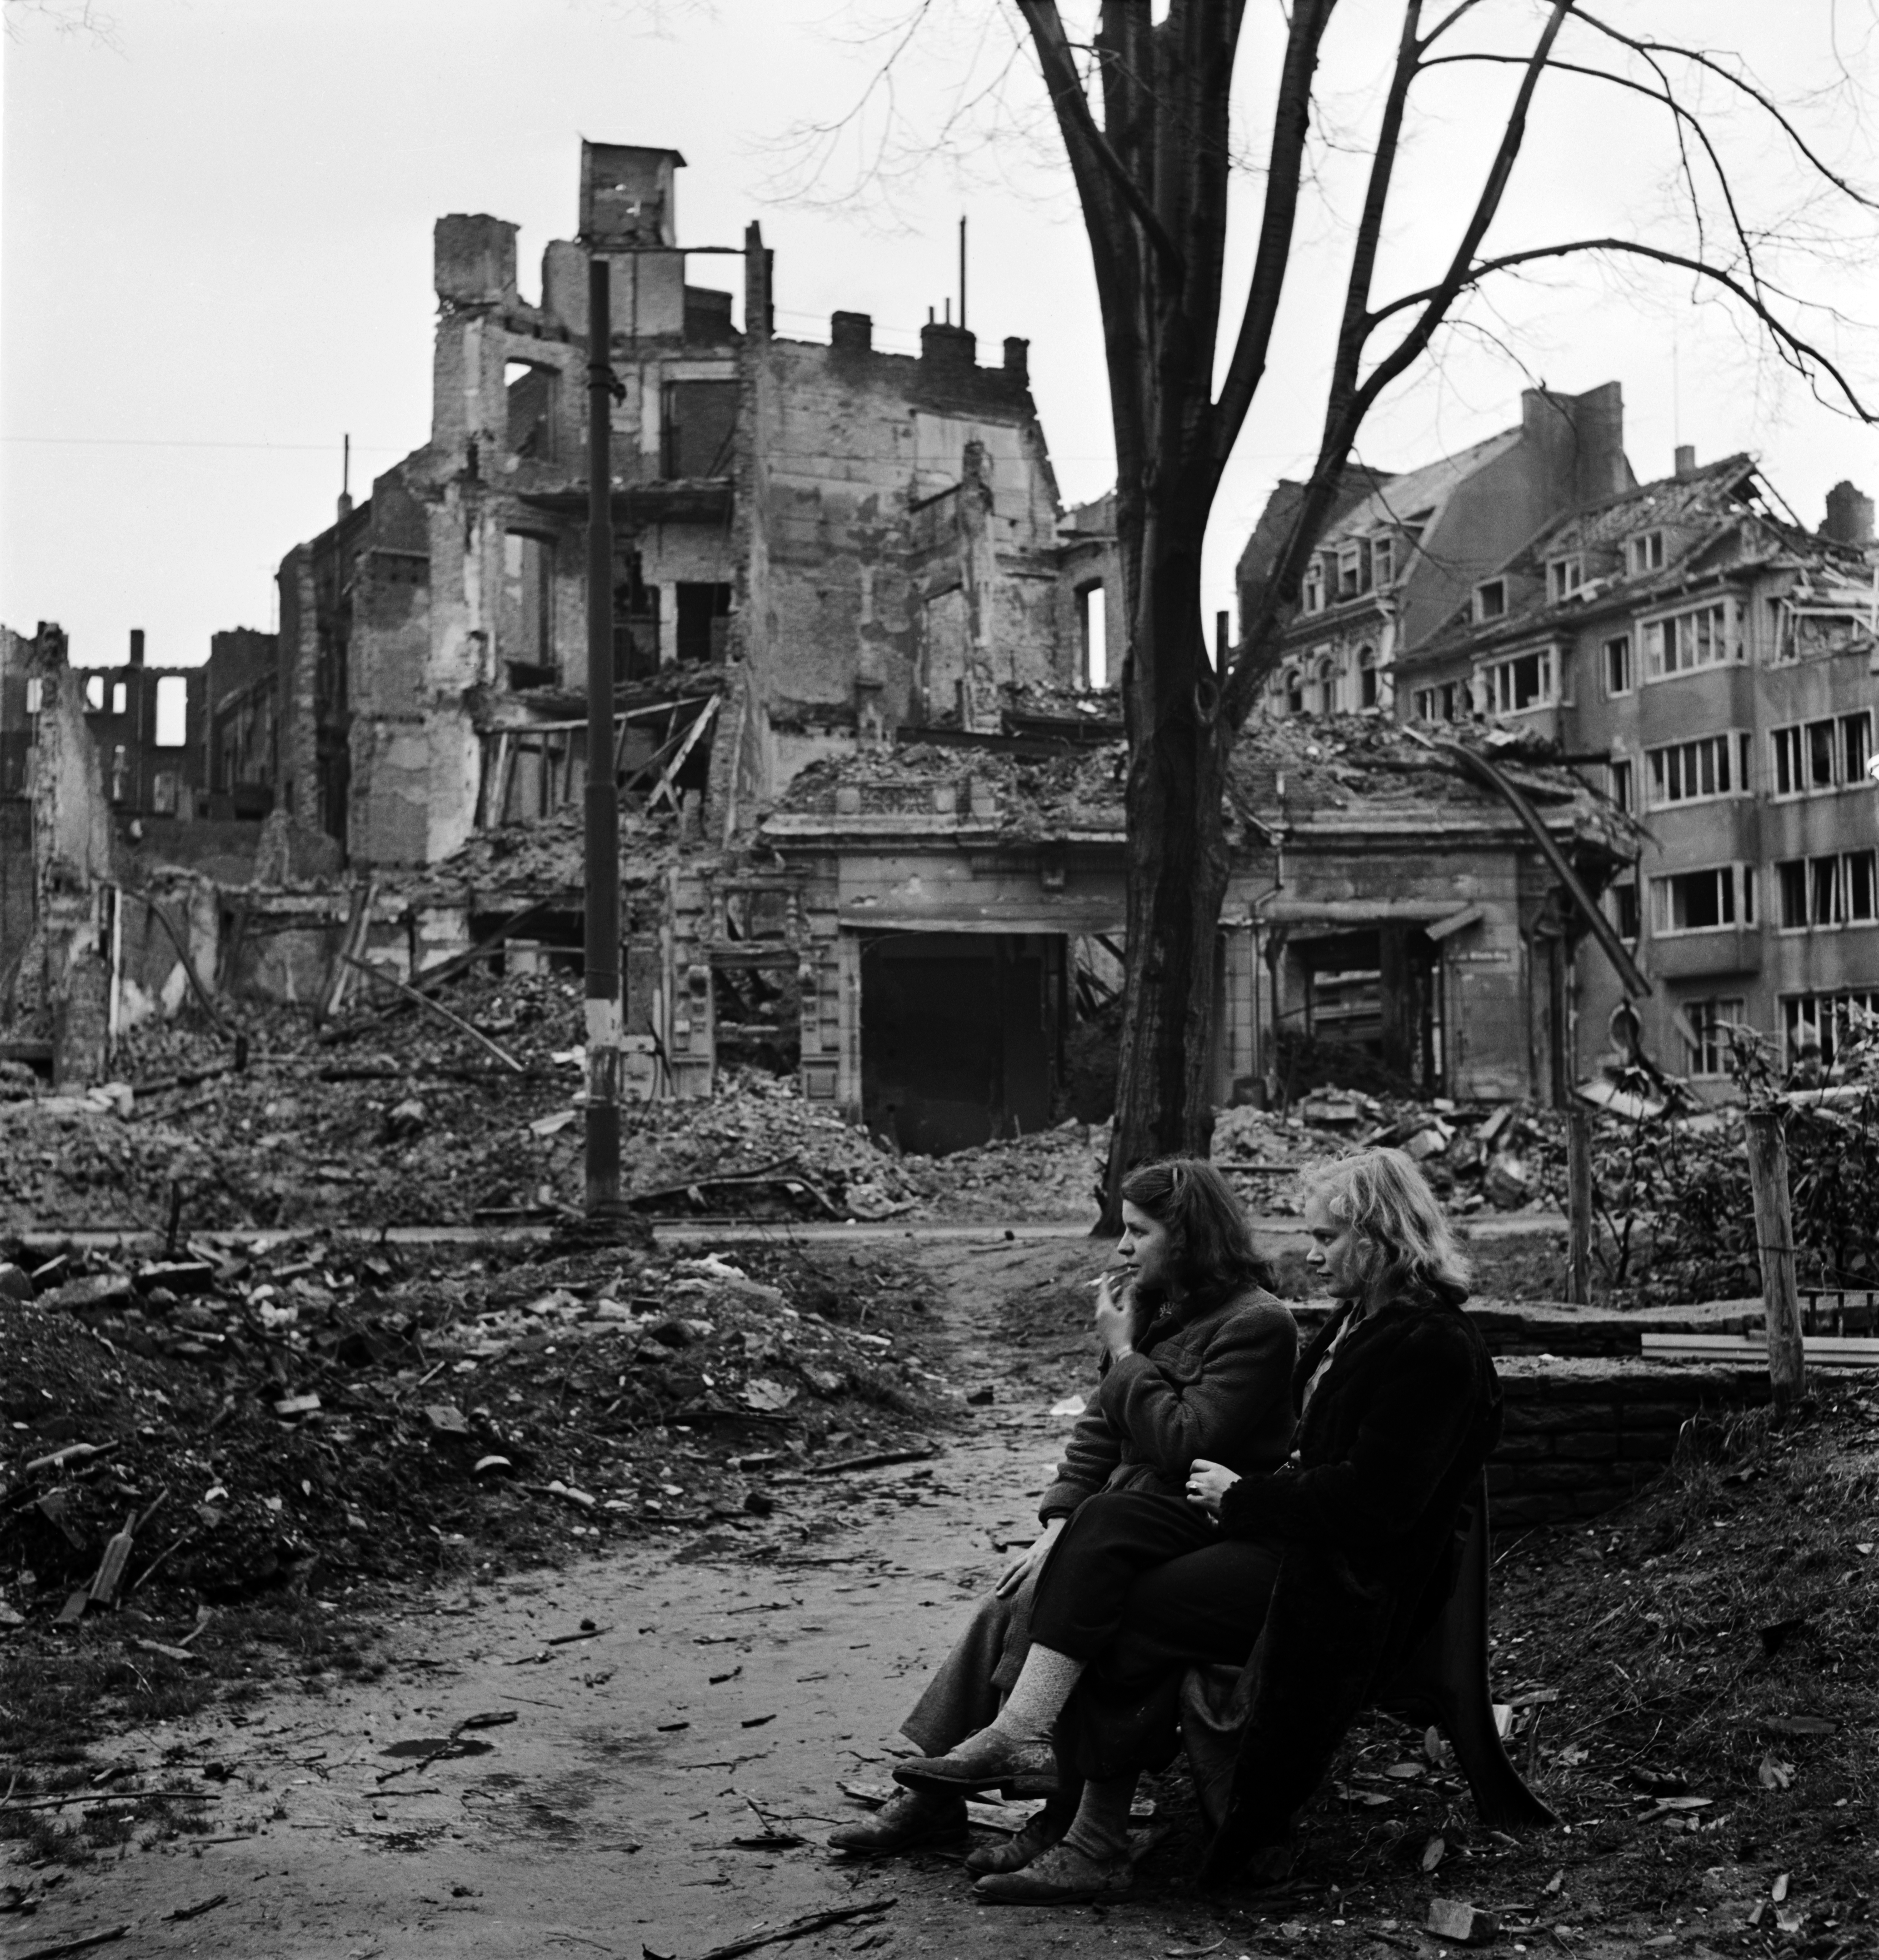 Lee Miller, Deux Allemandes sur un banc dans un parc au milieu des ruines. Cologne, Allemagne, 1945 © Lee Miller Archives, England 2021. All rights reserved. leemiller.co.uk